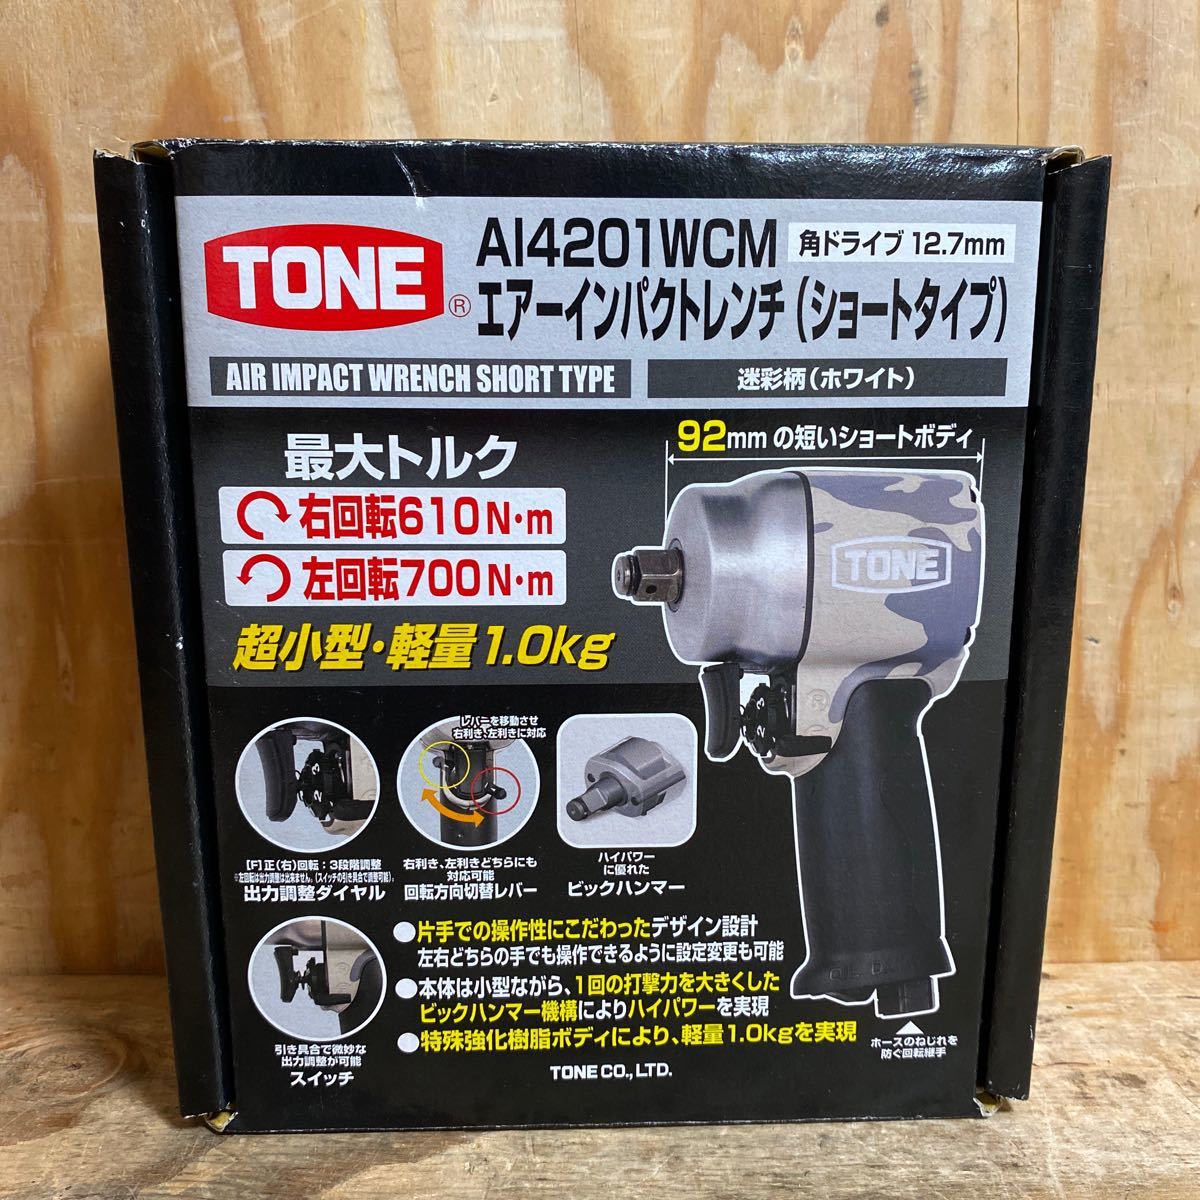 トネ(TONE) エアーインパクトレンチ アングルショートタイプ AI4201WCM 差込角12.7mm の高価買取なら、電動工具の買取屋